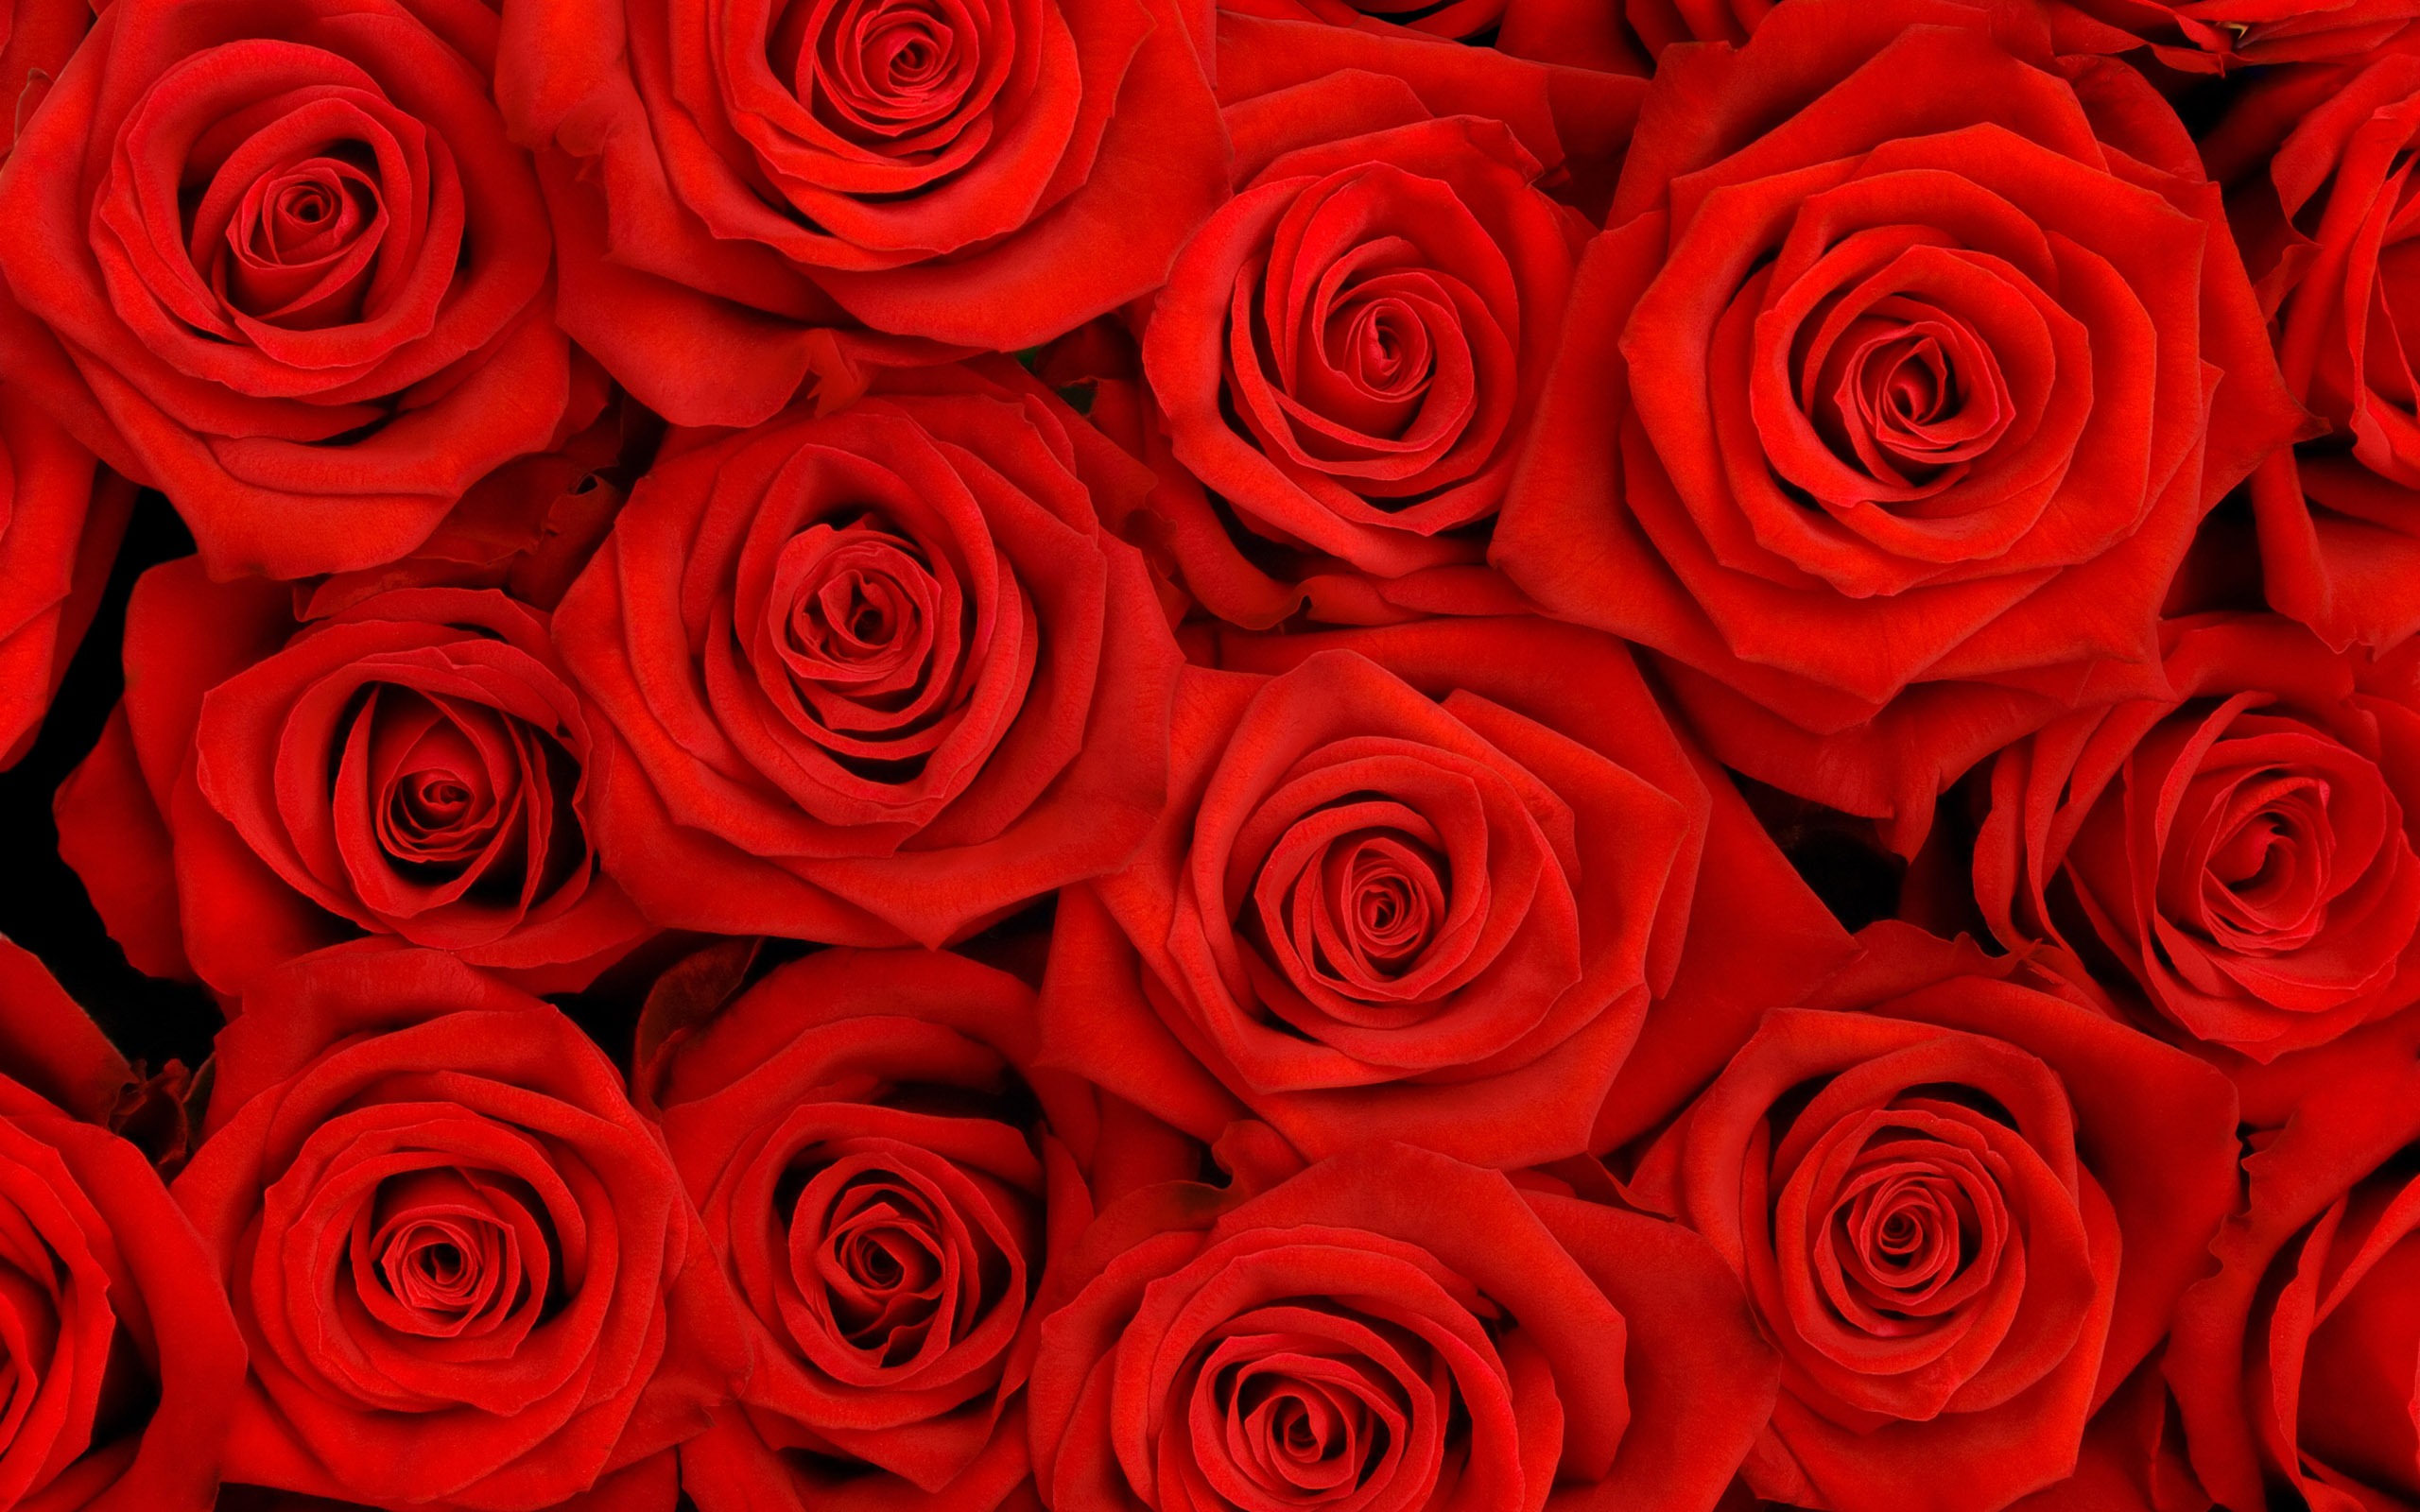 超大玫瑰写真 壁纸(二)16 - 2560x1600